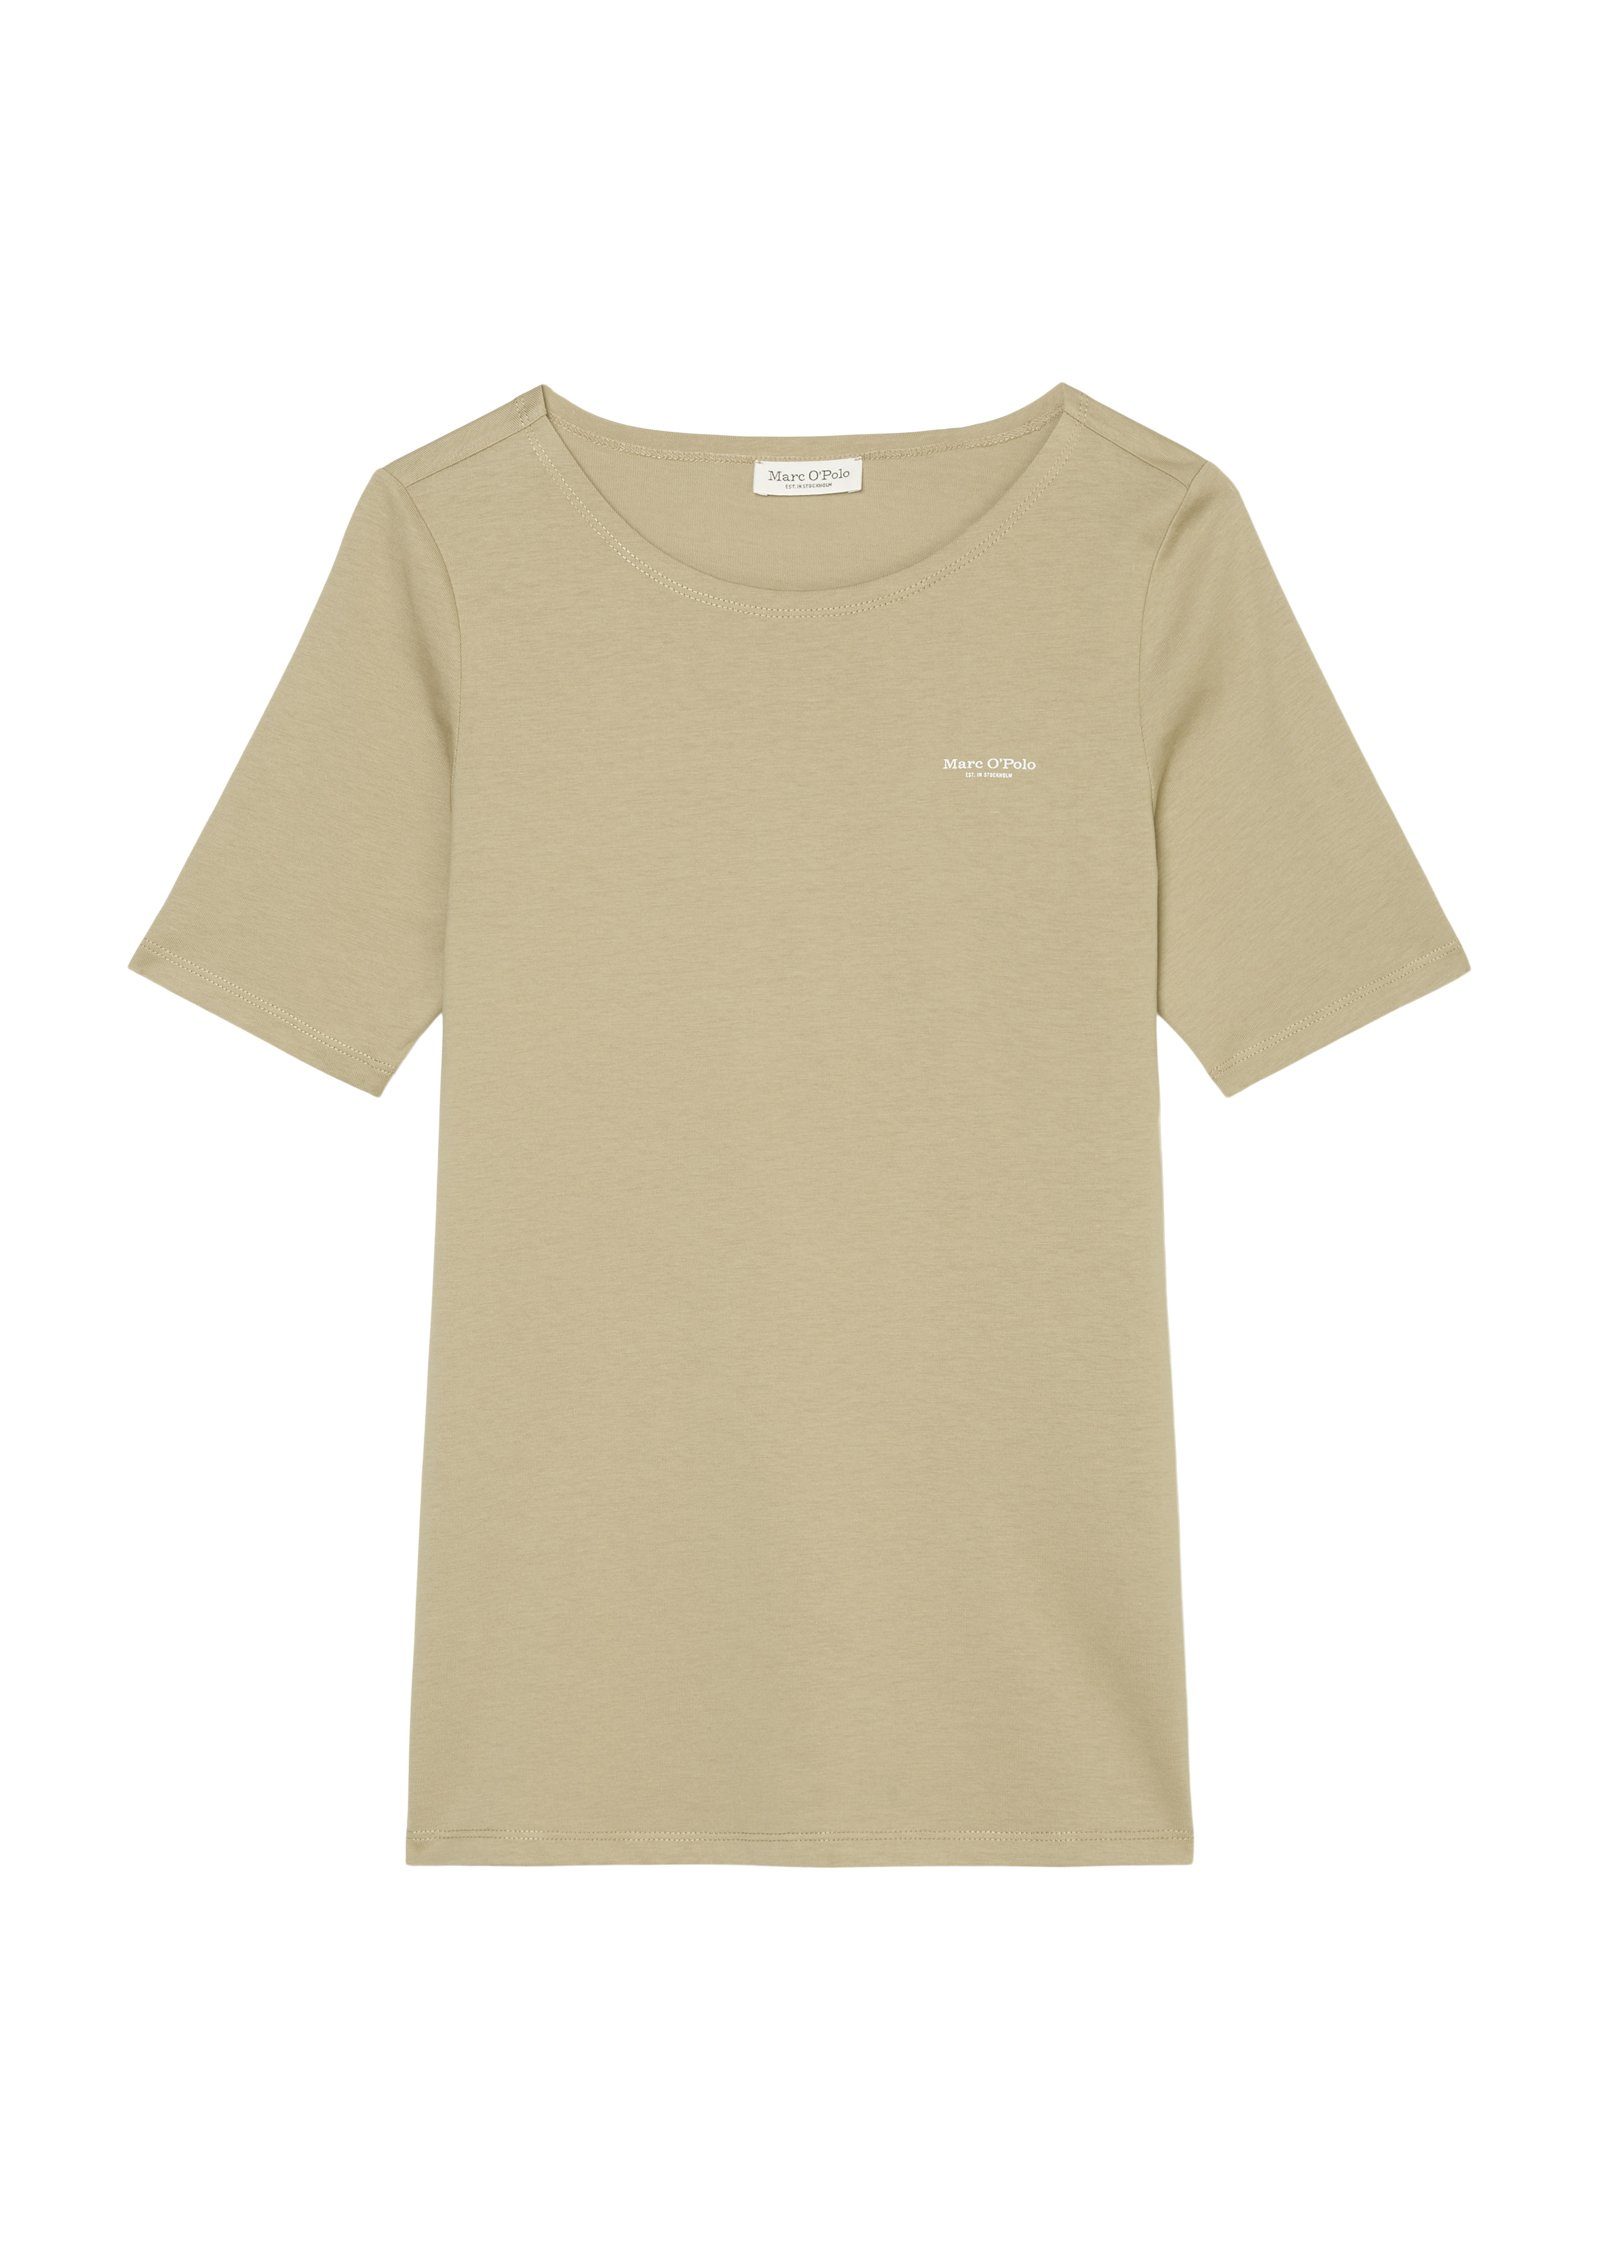 Logo der round Marc kleinem mit short-sleeve, sand O'Polo logo-print Brust T-Shirt auf T-shirt, nordic neck,